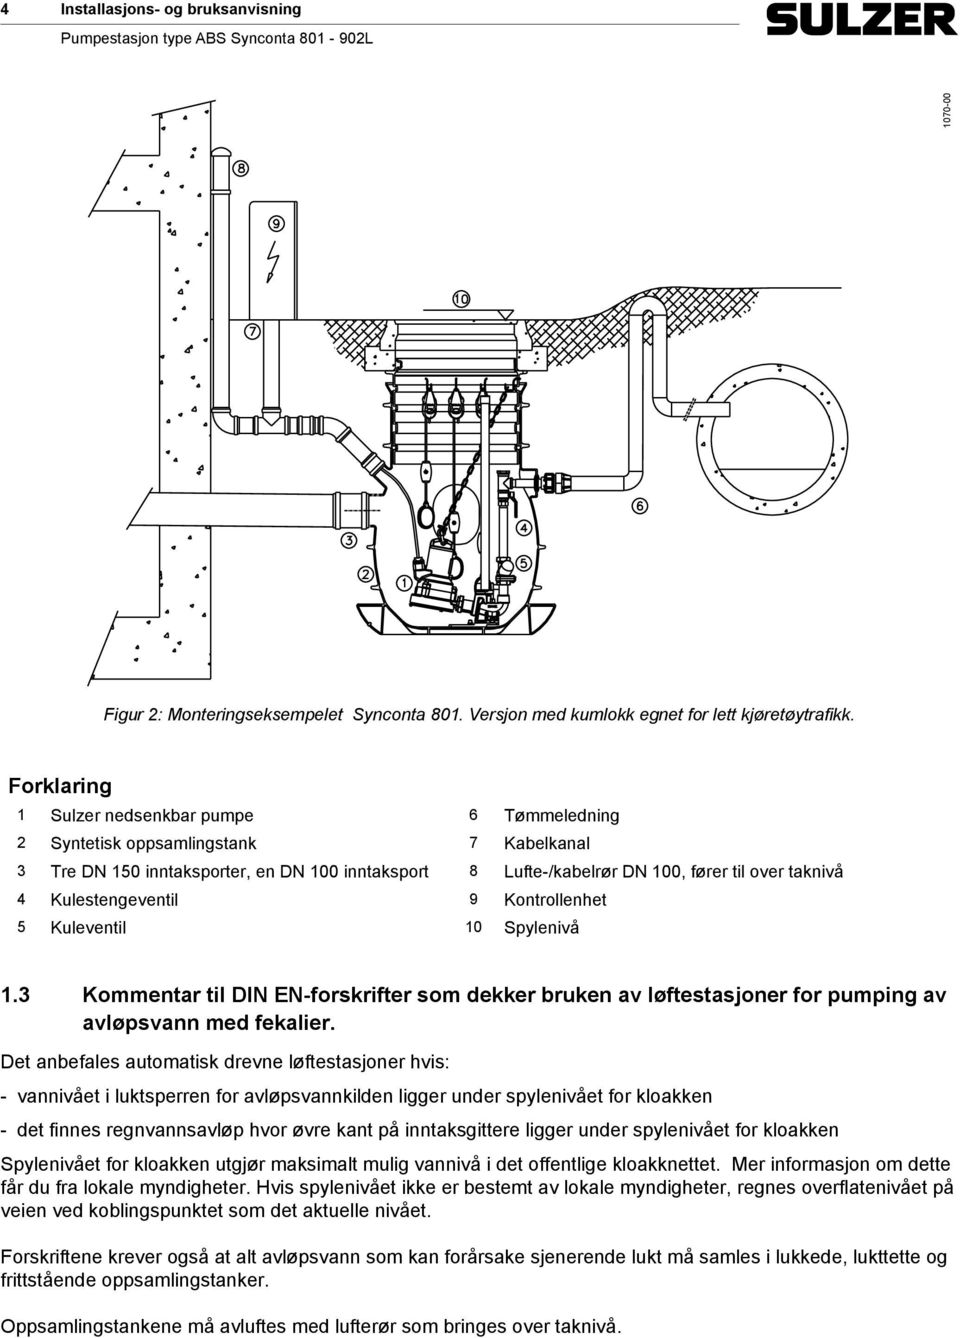 Kulestengeventil 9 Kontrollenhet 5 Kuleventil 10 Spylenivå 1.3 Kommentar til DIN EN-forskrifter som dekker bruken av løftestasjoner for pumping av avløpsvann med fekalier.